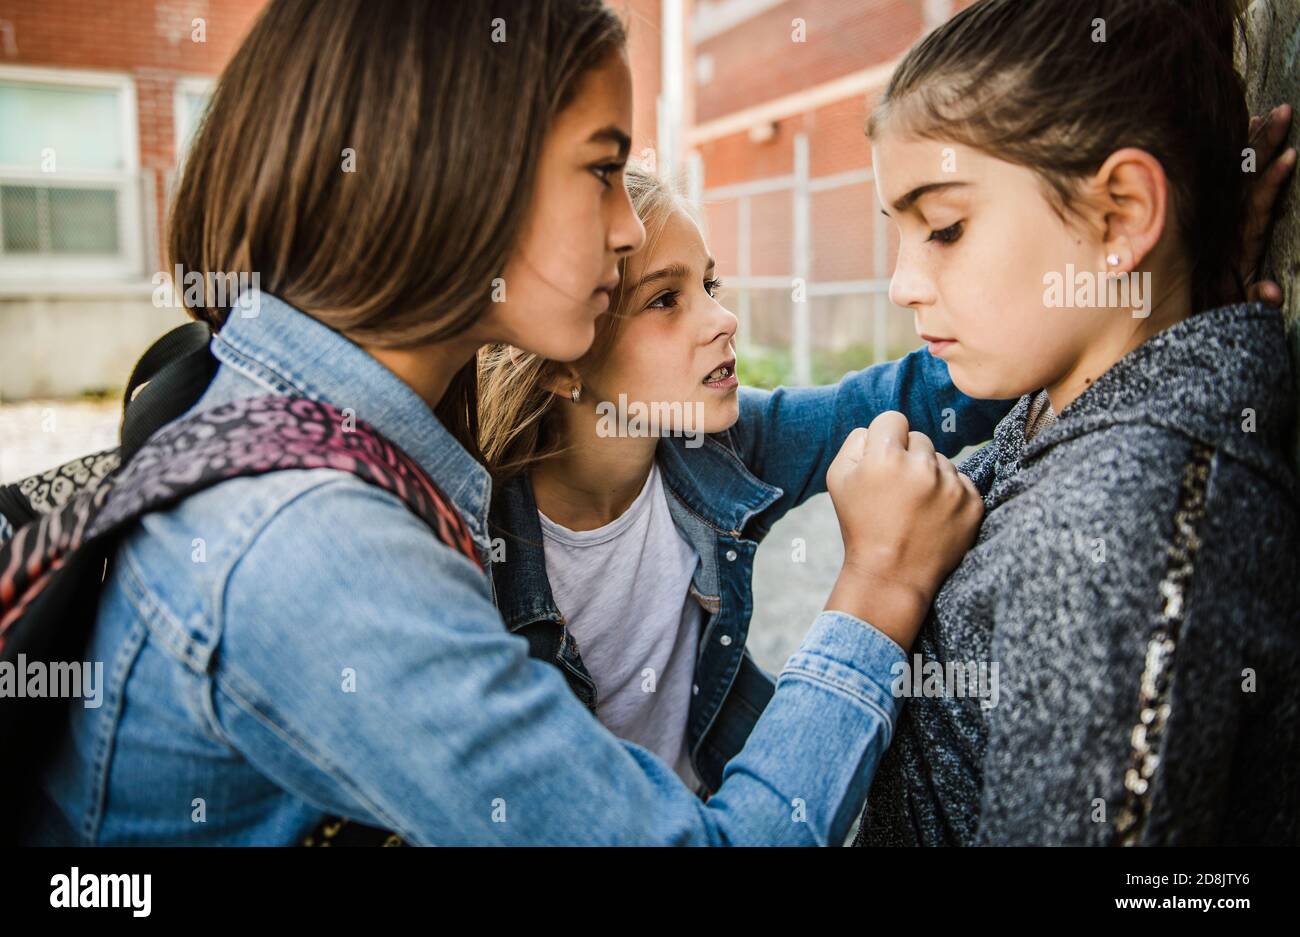 Ein trauriges Mädchen Einschüchterung Moment auf der elementaren Alter Mobbing Auf dem Schulhof Stockfoto